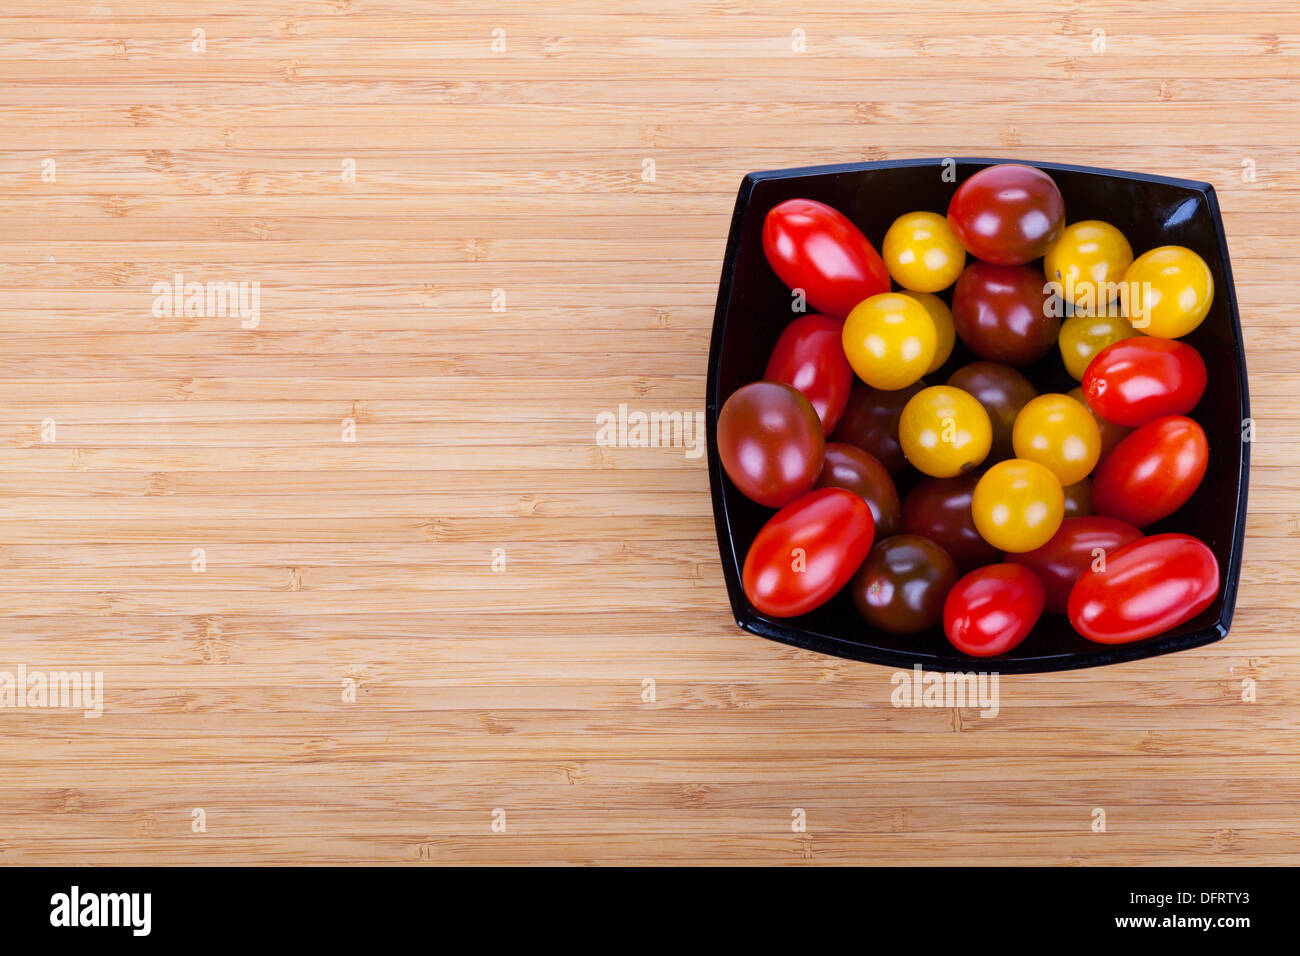 Сherry tomates en placa negra sobre la mesa de madera con rebanadas de pimiento verde Foto de stock